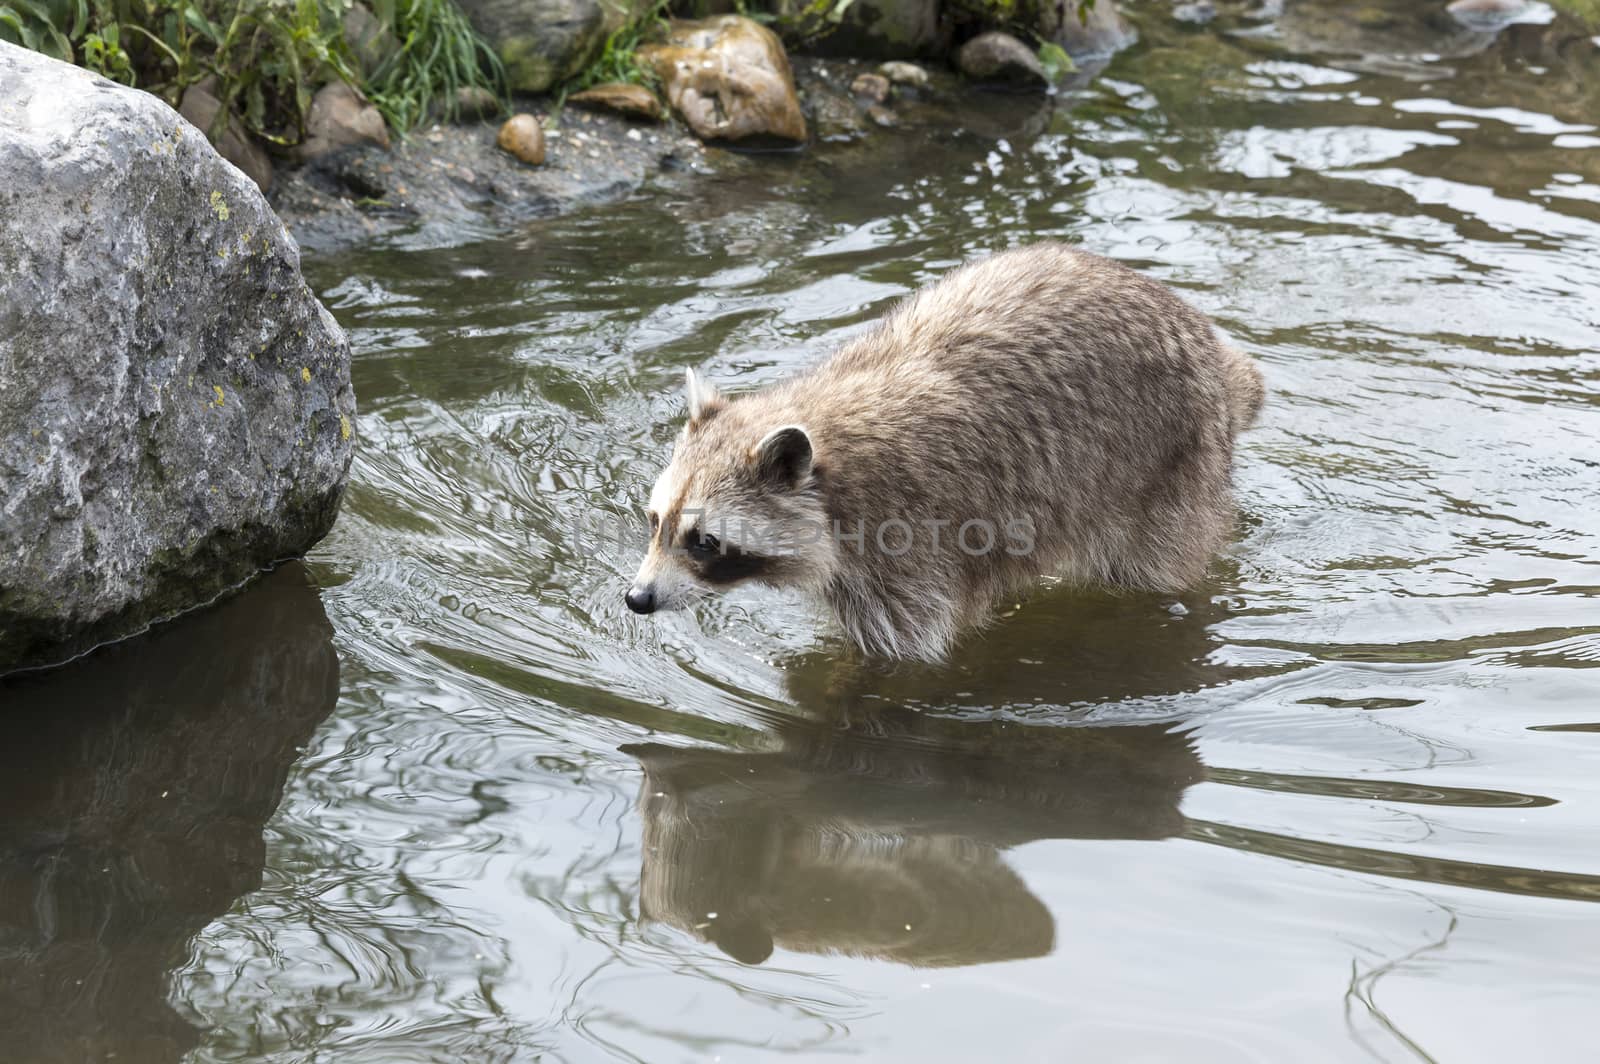 raccoon walking in the water near the rocks